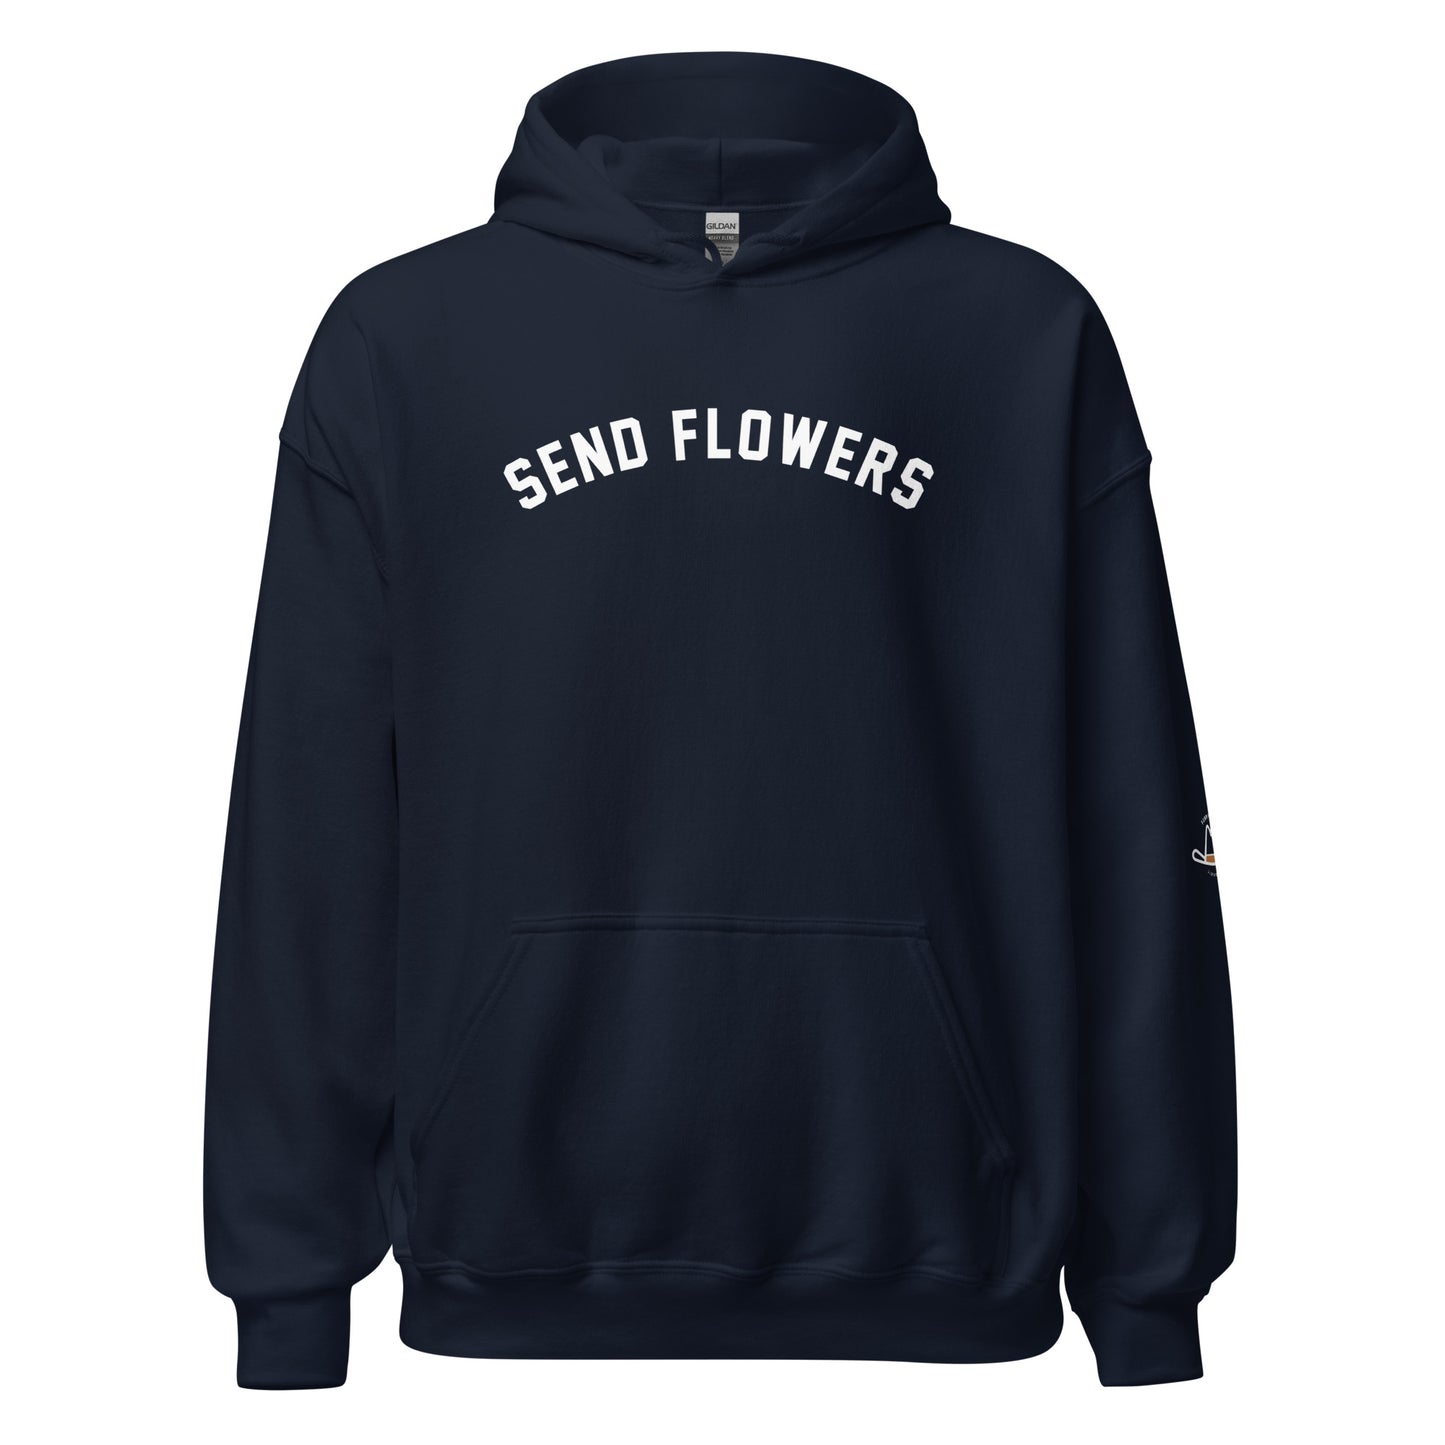 Send Flowers Original Hoodie